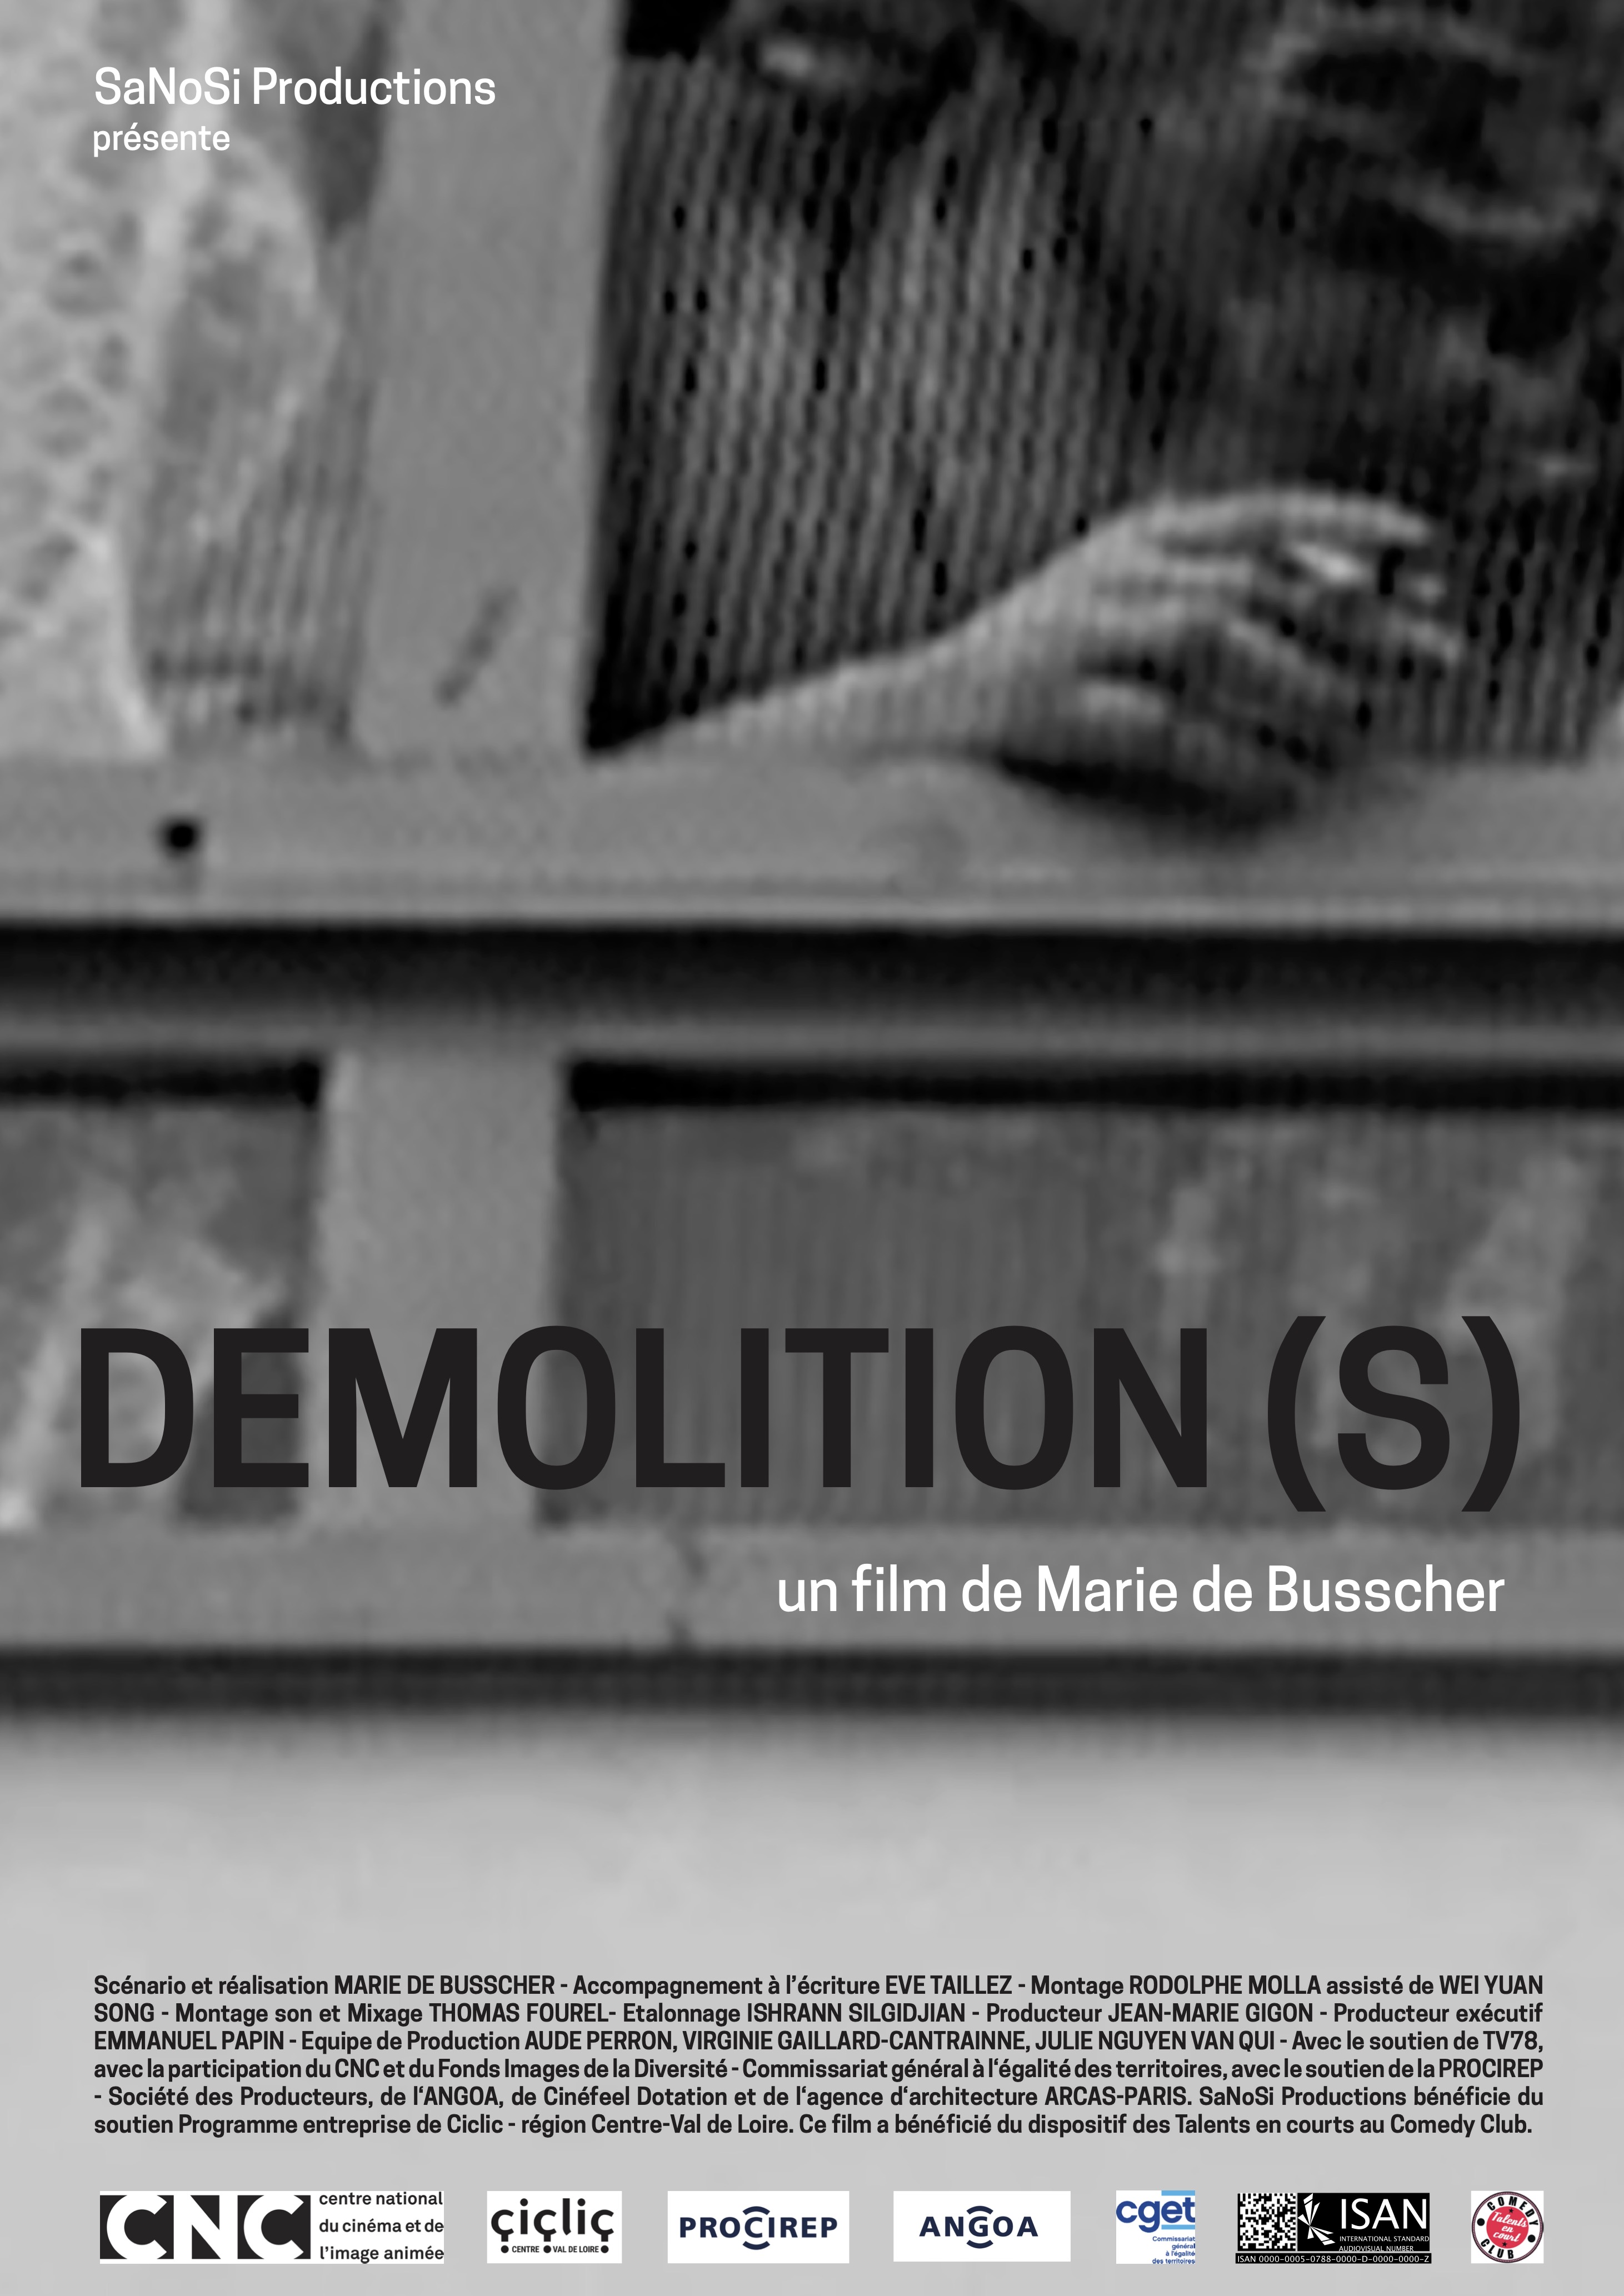 Demolition(s)